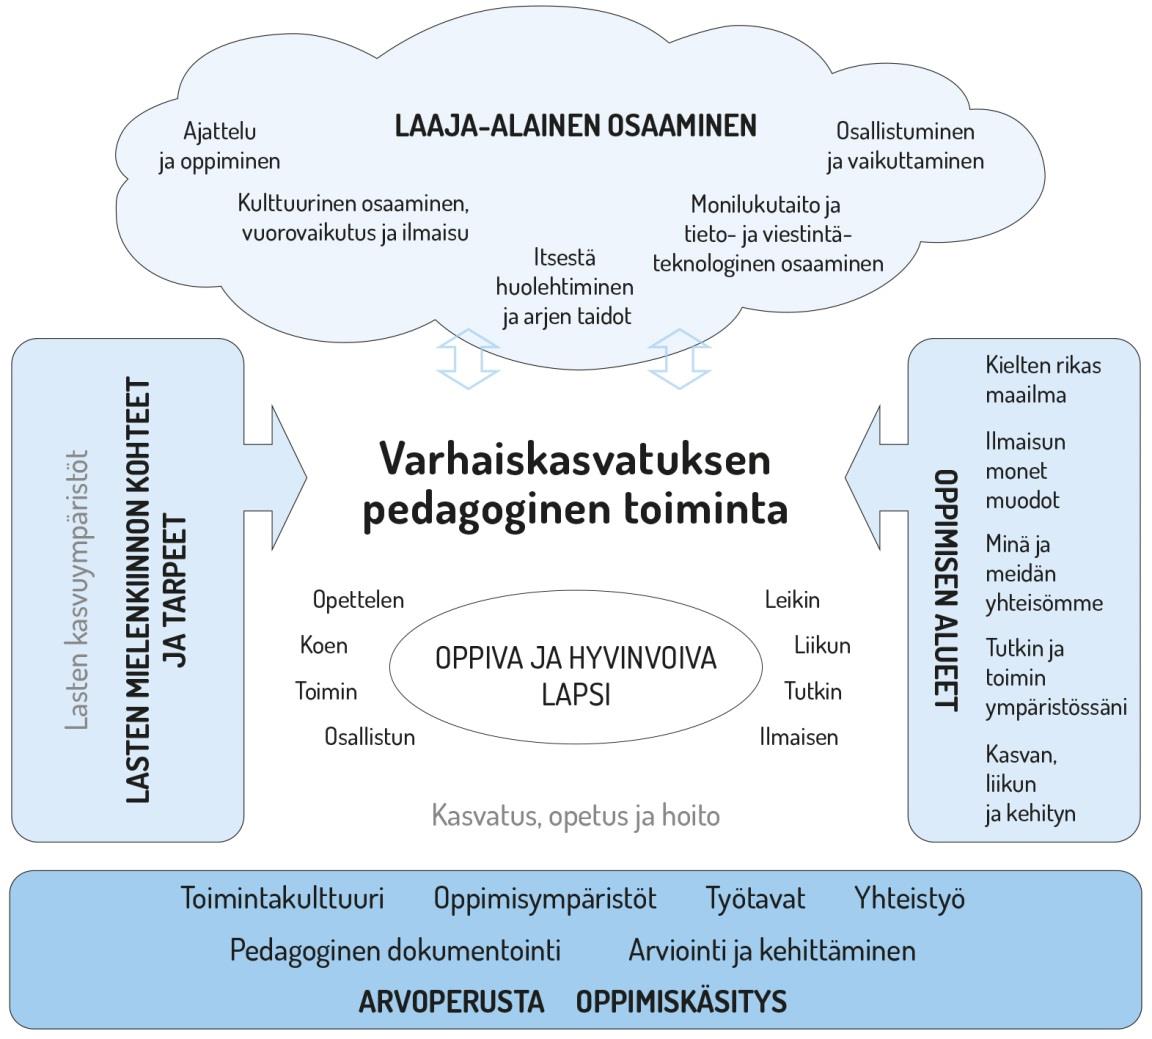 25 4. Varhaiskasvatuksen pedagogisen toiminnan suunnittelu ja toteuttaminen 4.1 Pedagogisen toiminnan viitekehys Varhaiskasvatuksen pedagogista toimintaa ja sen toteuttamista kuvaa kokonaisvaltaisuus.